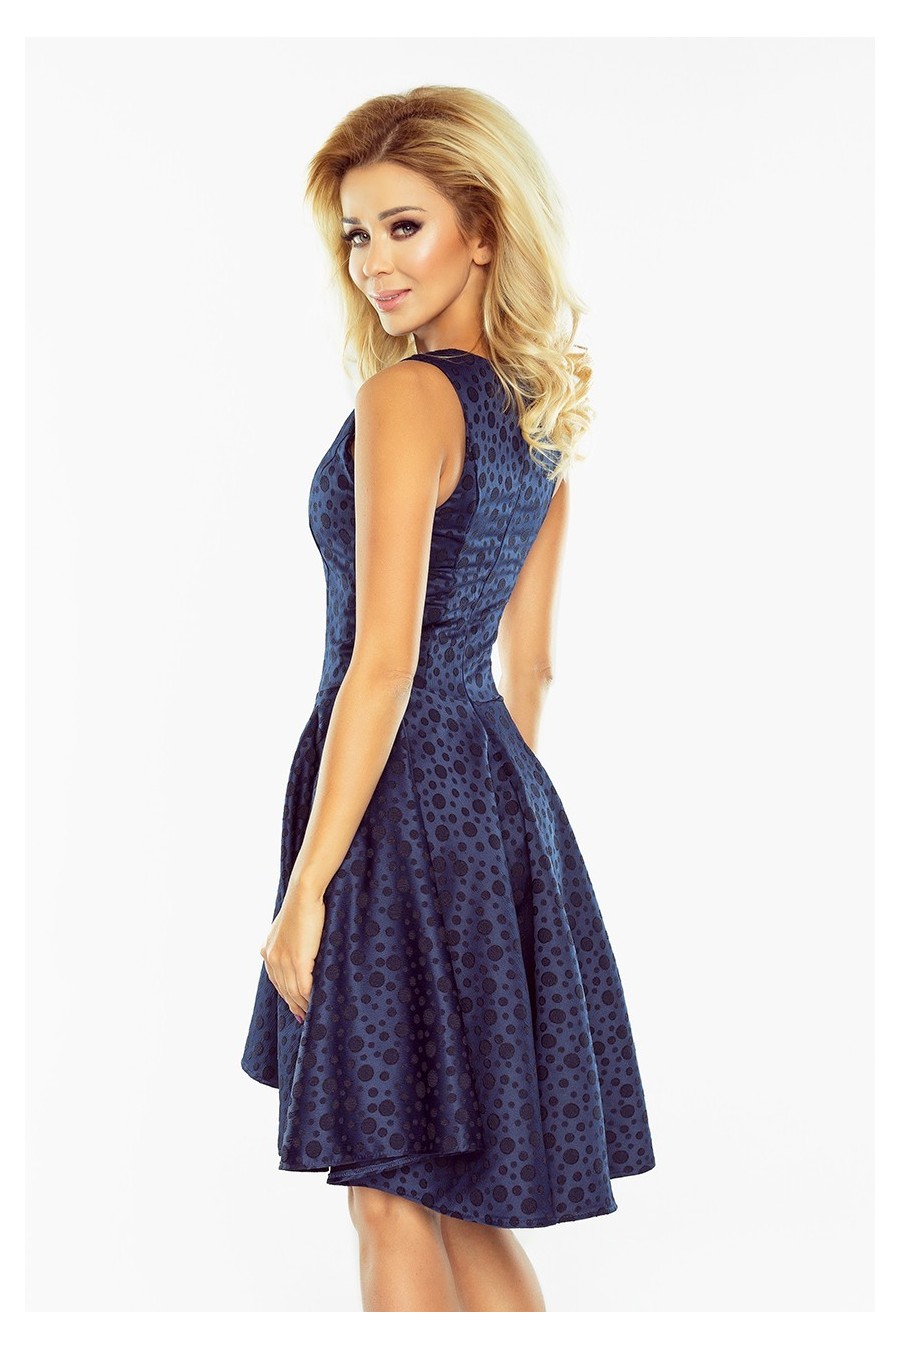 Exclusive asymetrické šaty - tmavé modra 175-3